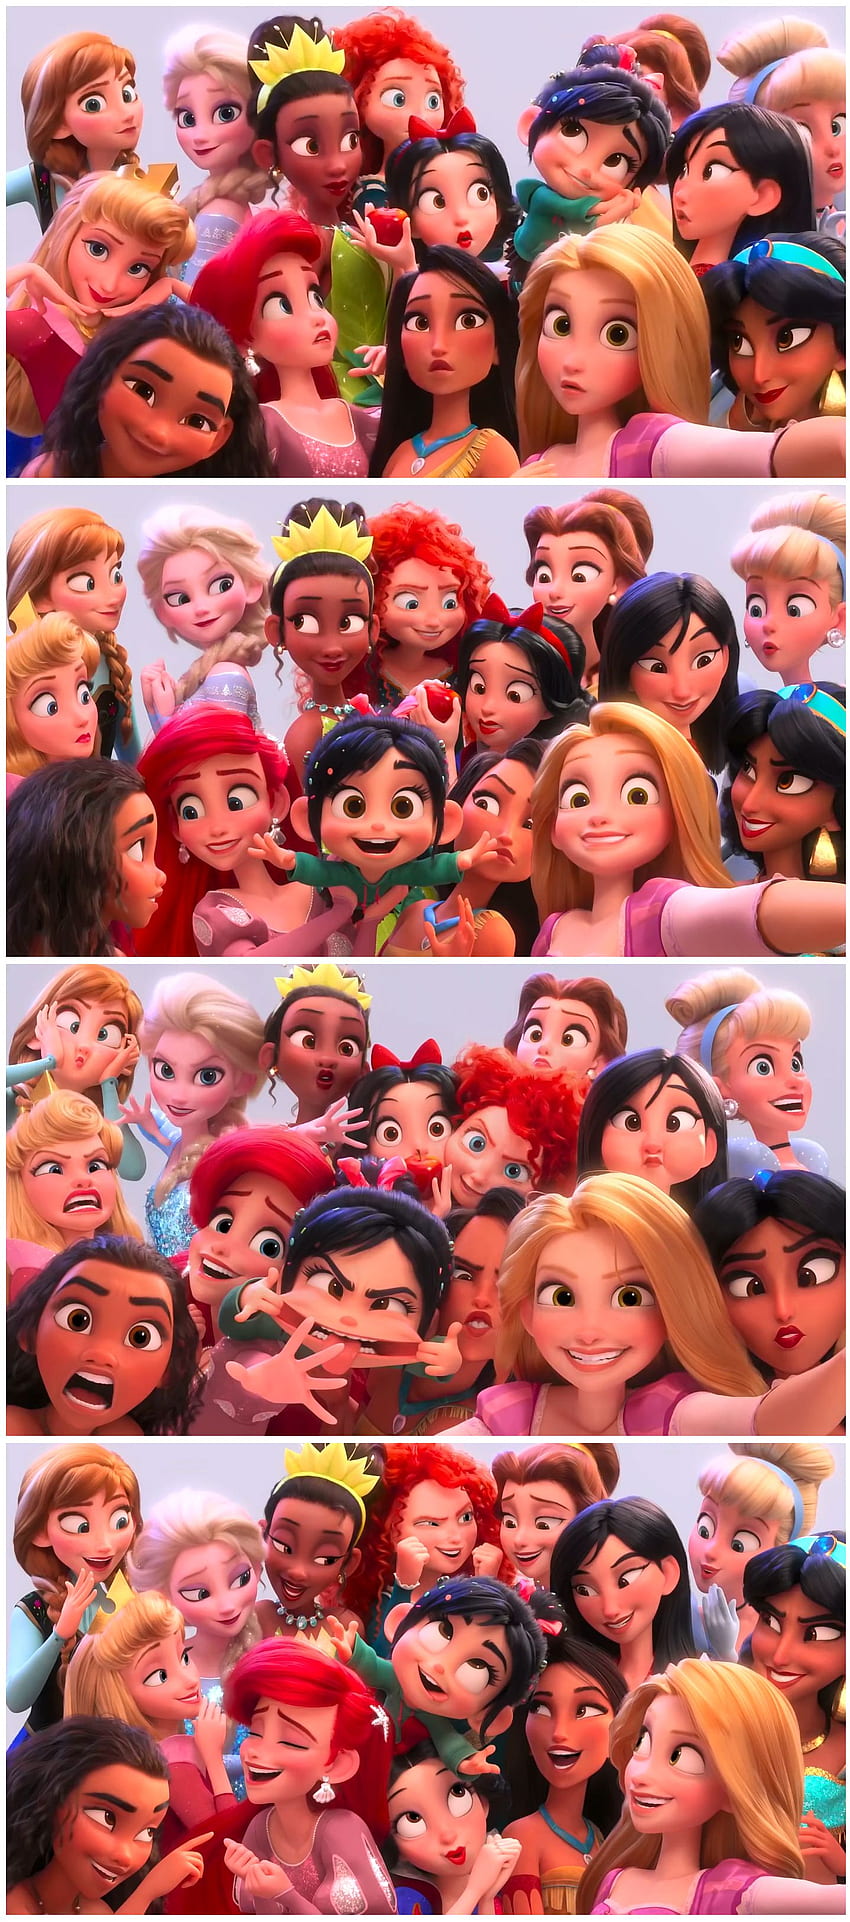 Trailer Semua Putri Disney Dari Wreck It Ralph 2. Disney Lucu, Disney, Semua Putri Disney wallpaper ponsel HD